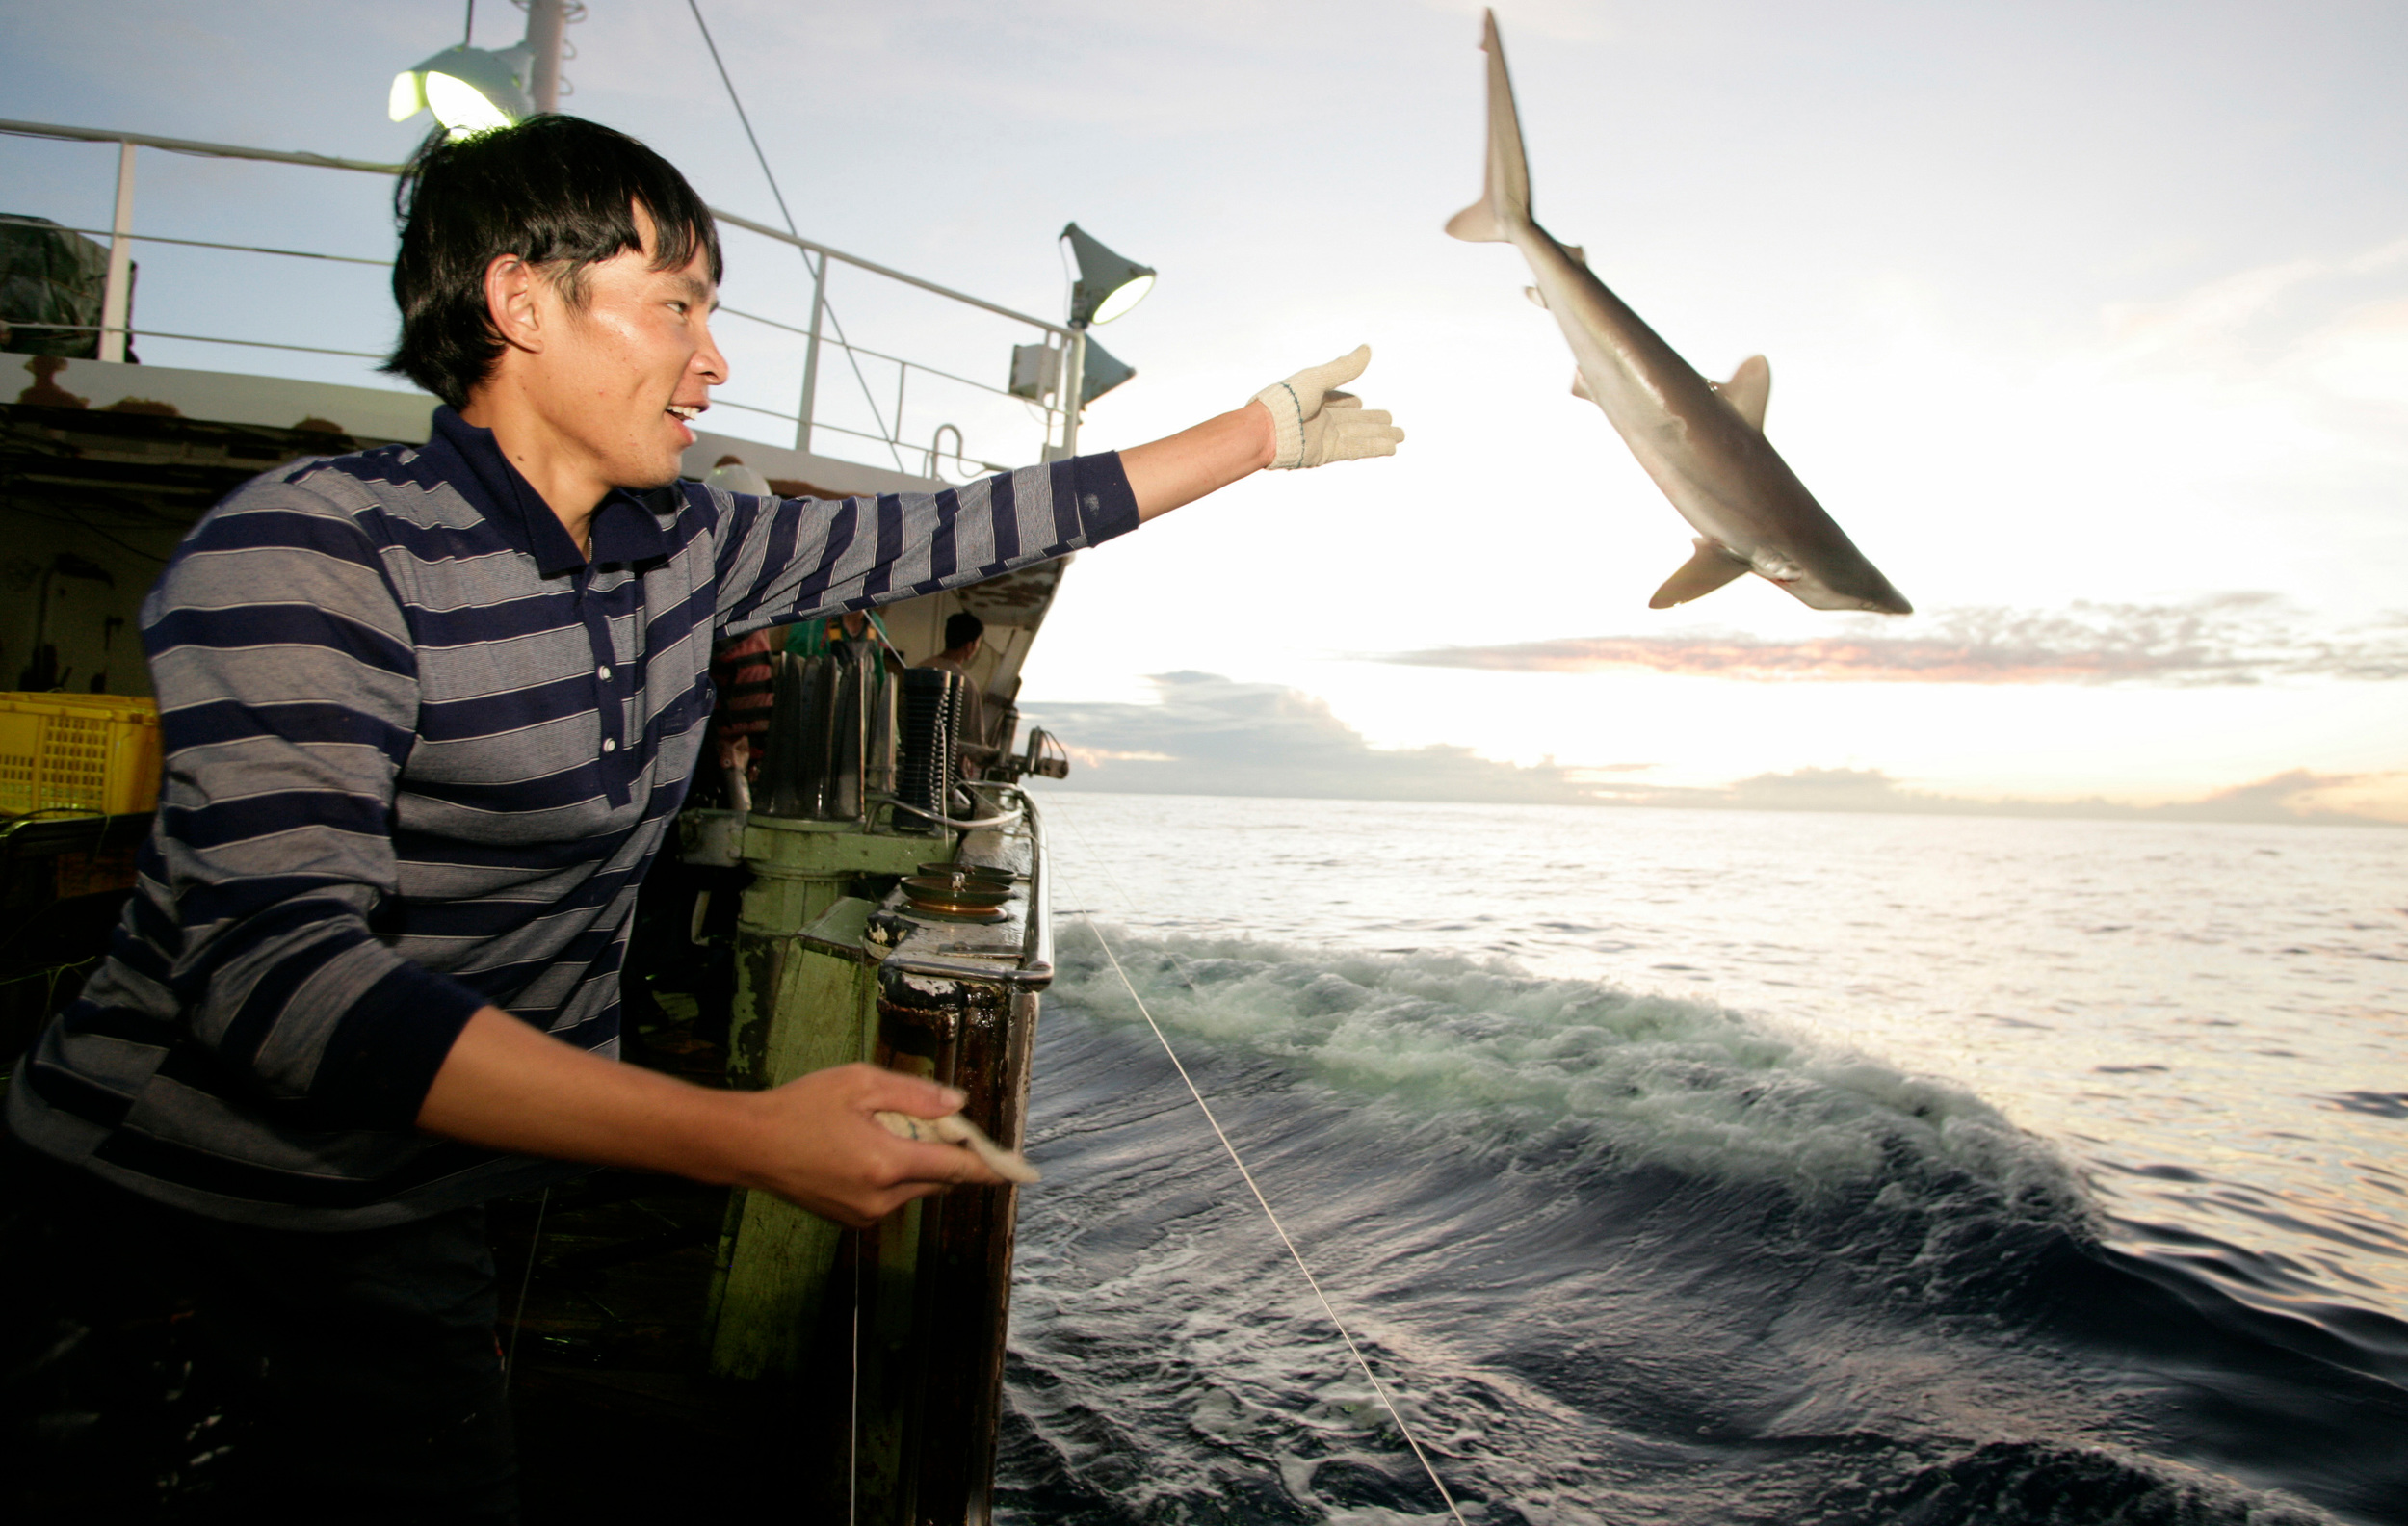 pescador arroja tiburón fuera de barco